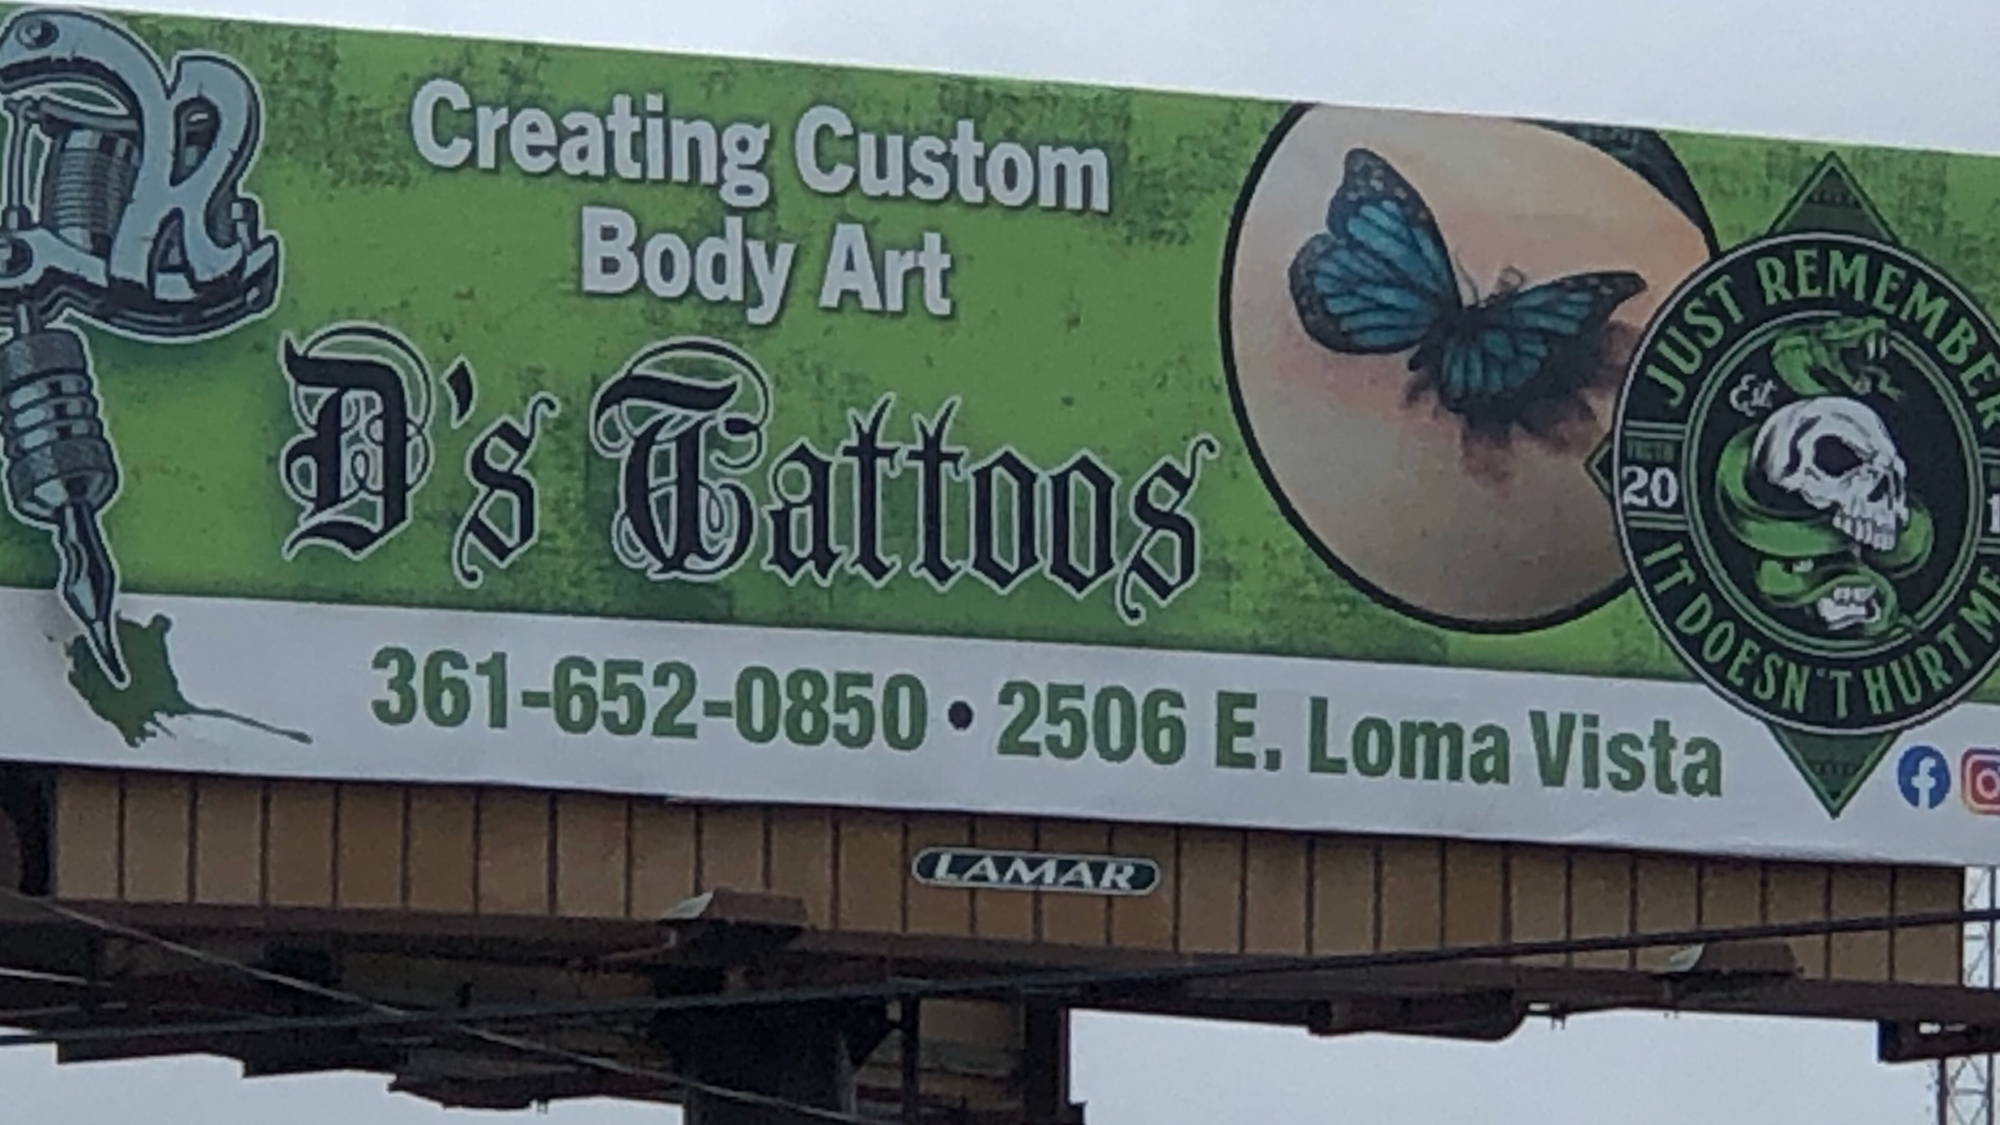 D's Tattoos